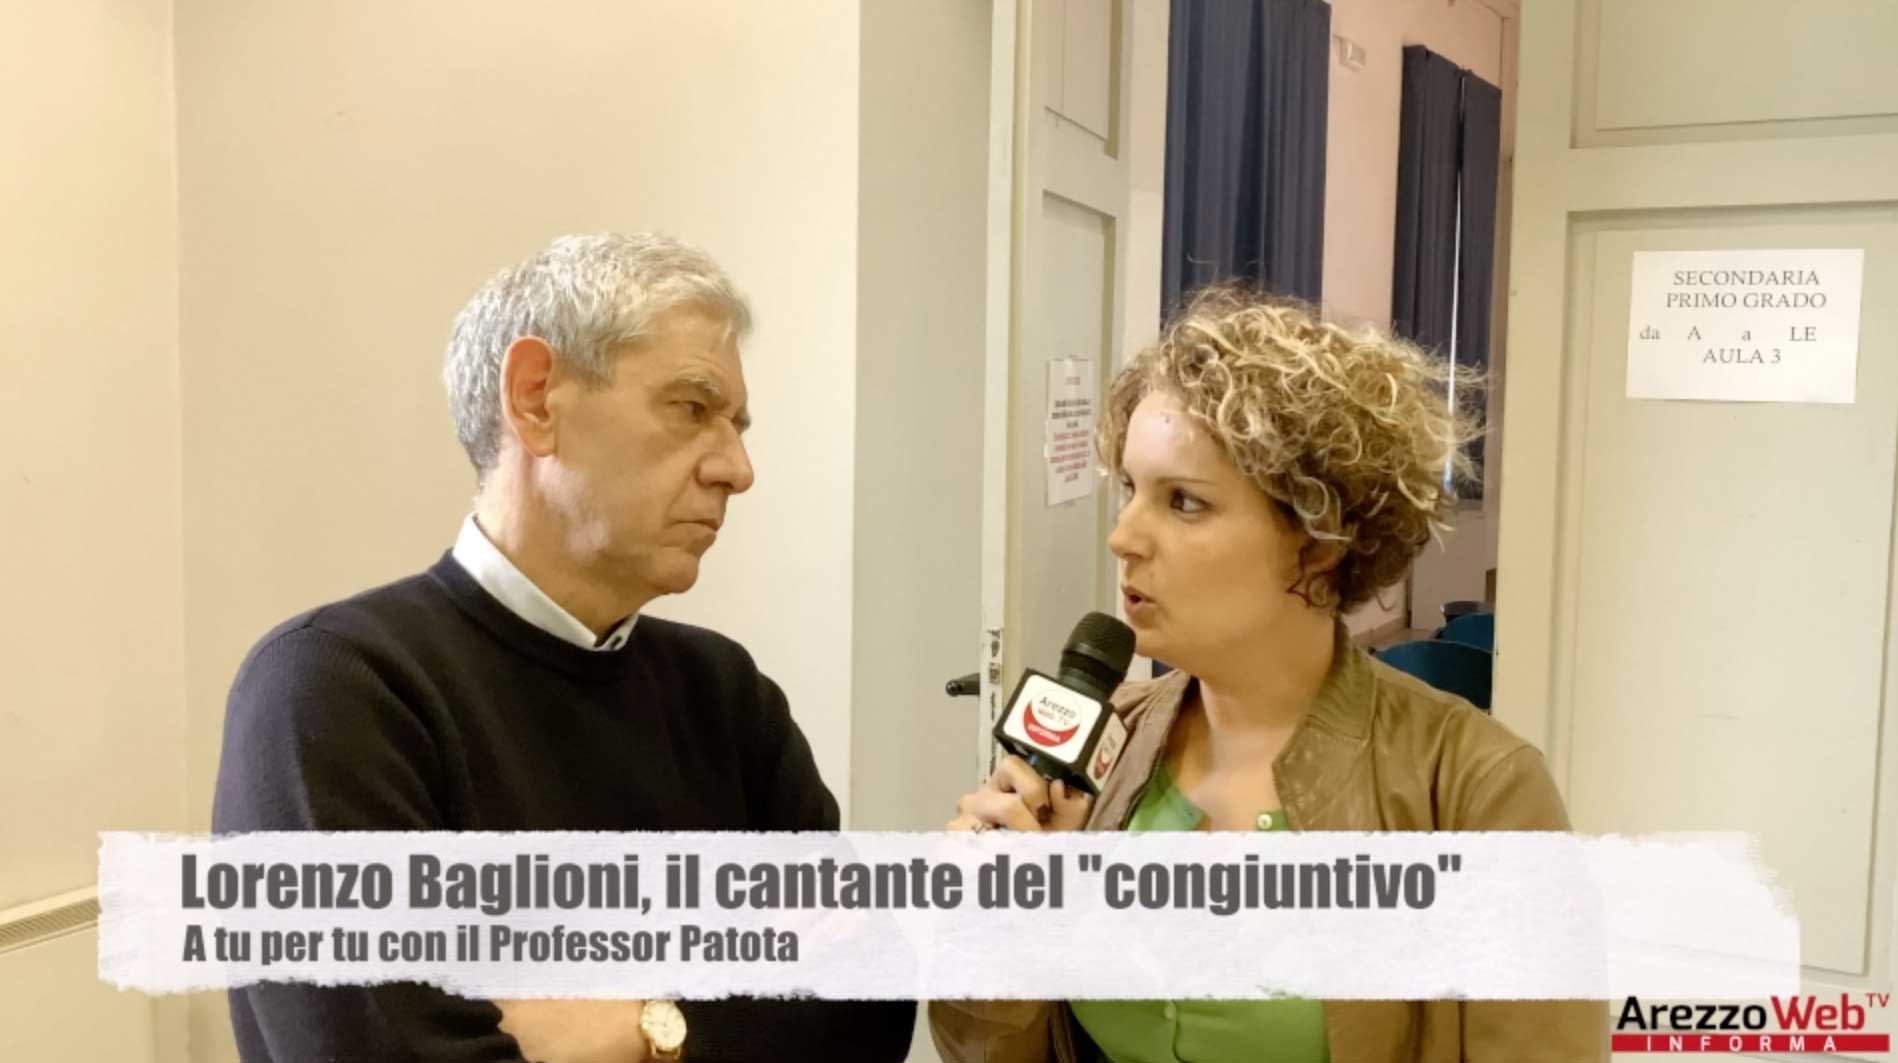 Lorenzo Baglioni, il cantante del “congiuntivo” a tu per tu con il Professor Patota